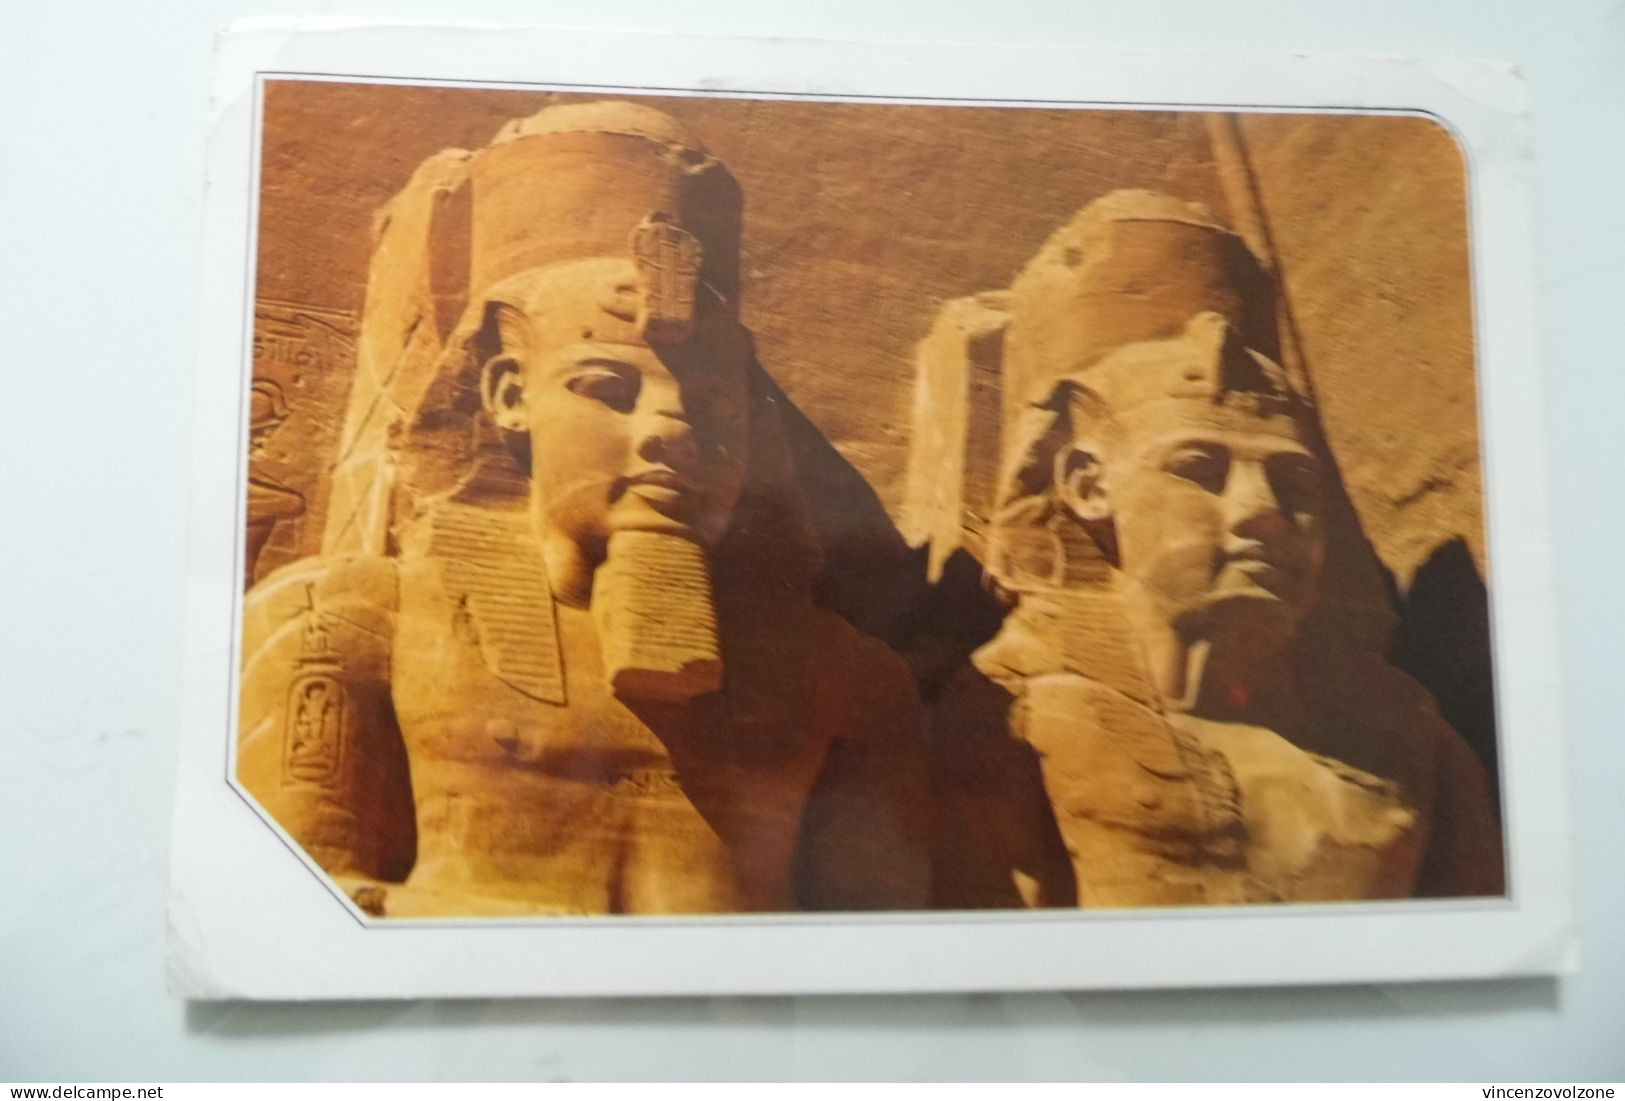 Cartolina Viaggiata "ABOU SIMBEL" 1995 - Abu Simbel